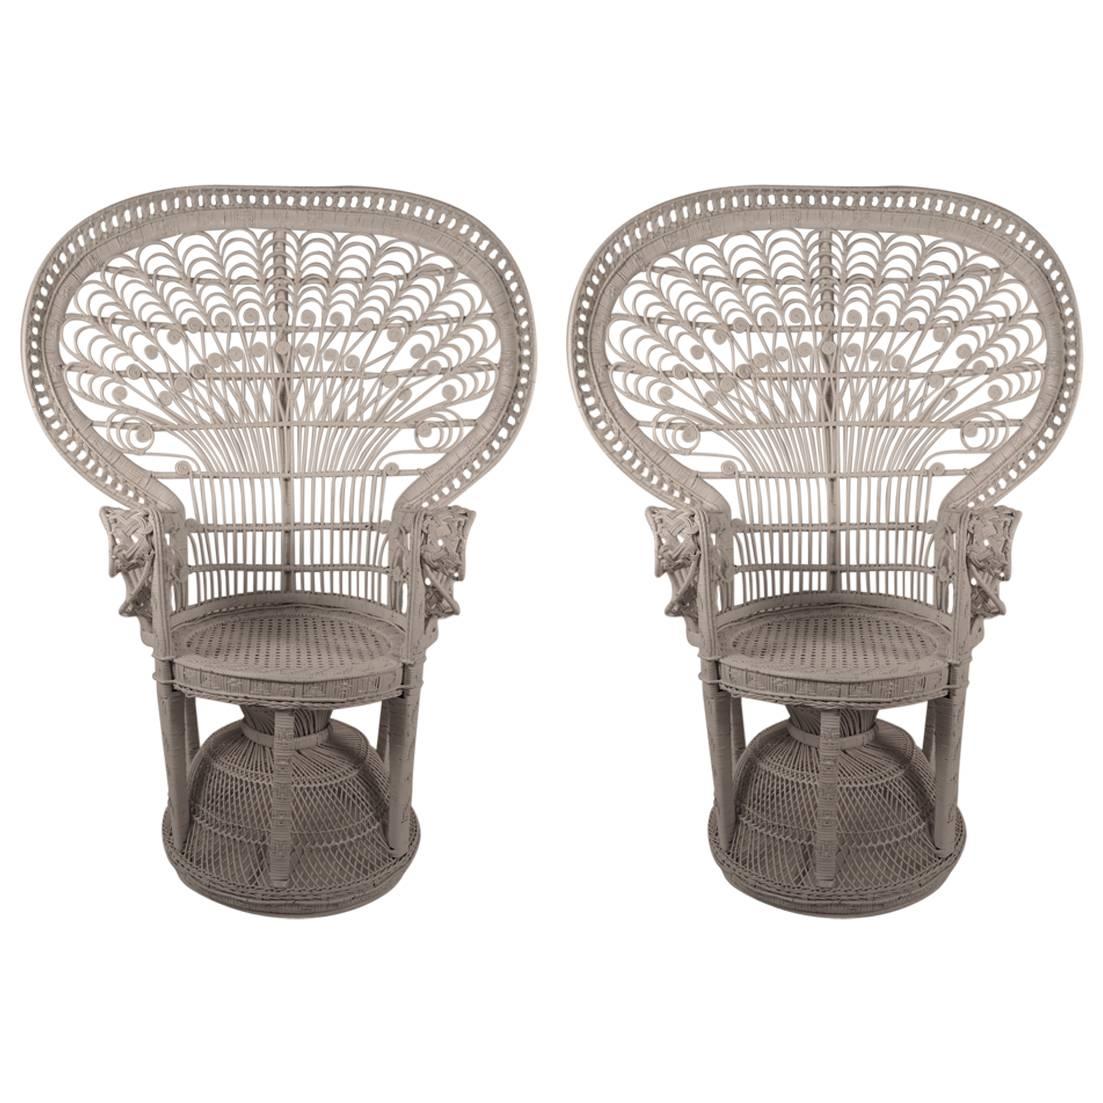 Pair of Rattan Wicker Fan Back " Emmanuelle" Peacock Chairs